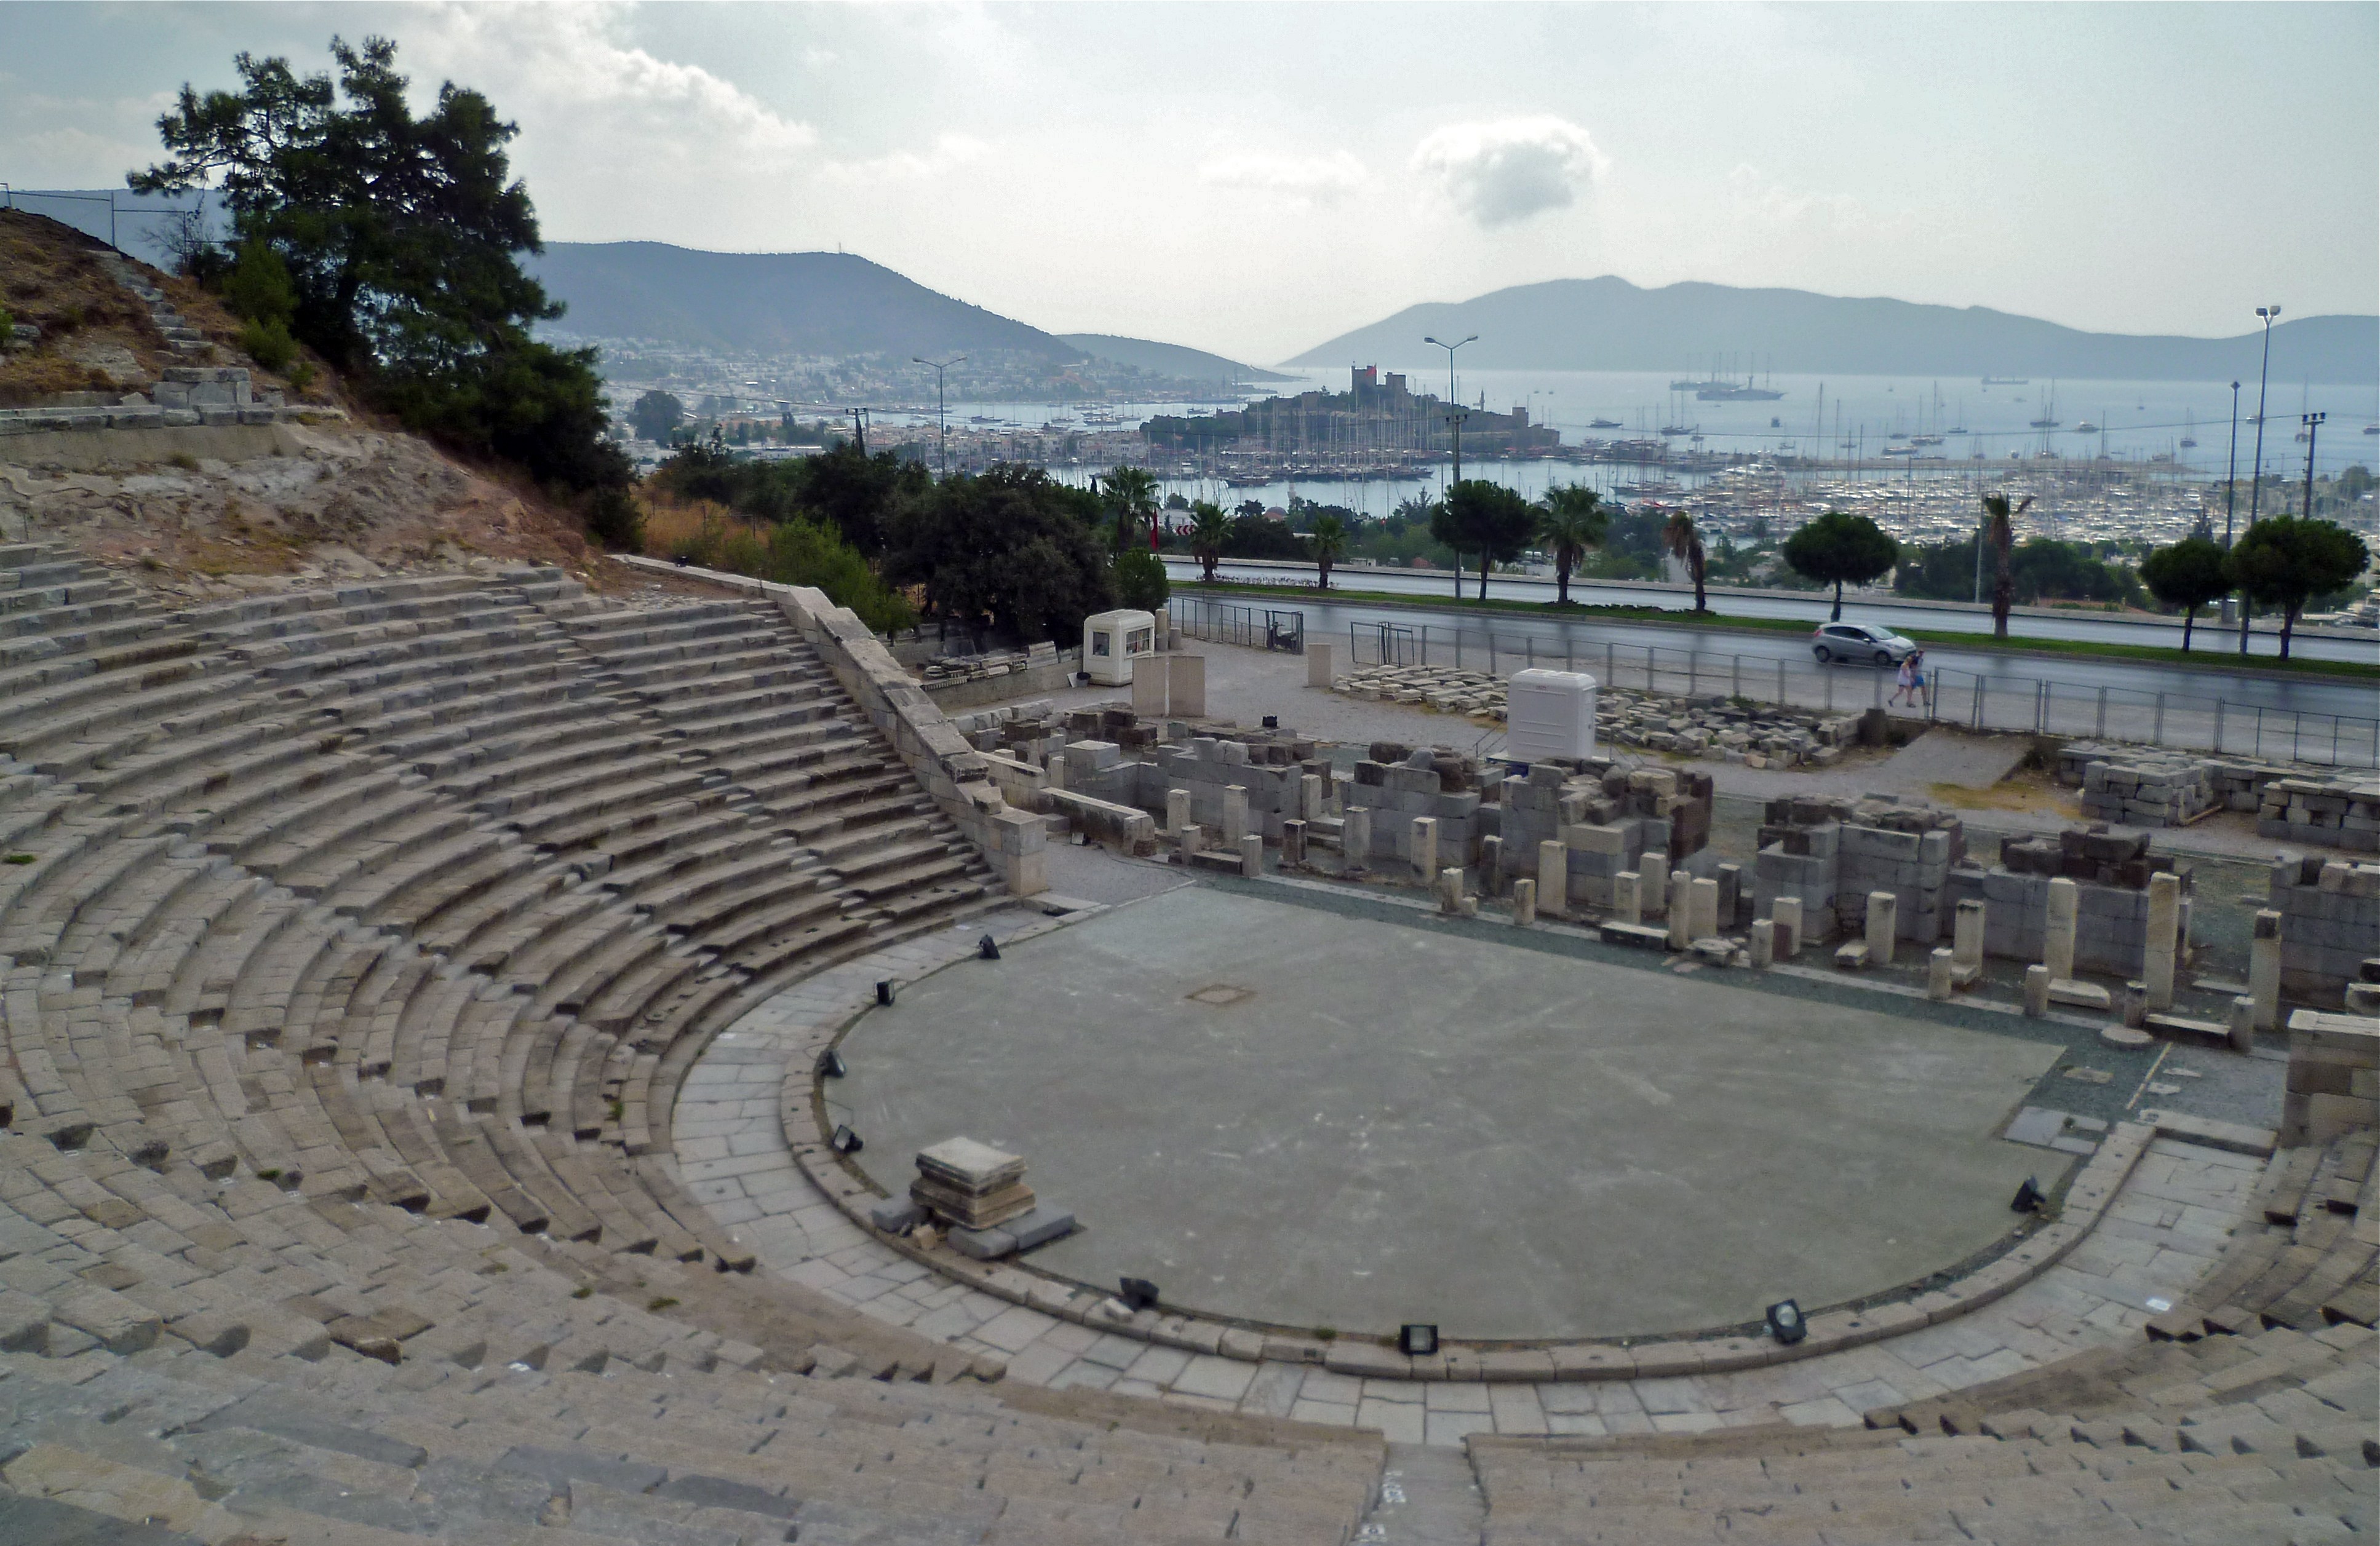 Bodrum Amphitheatre Photo Gallery - Bodrum Travel Guide Turkey